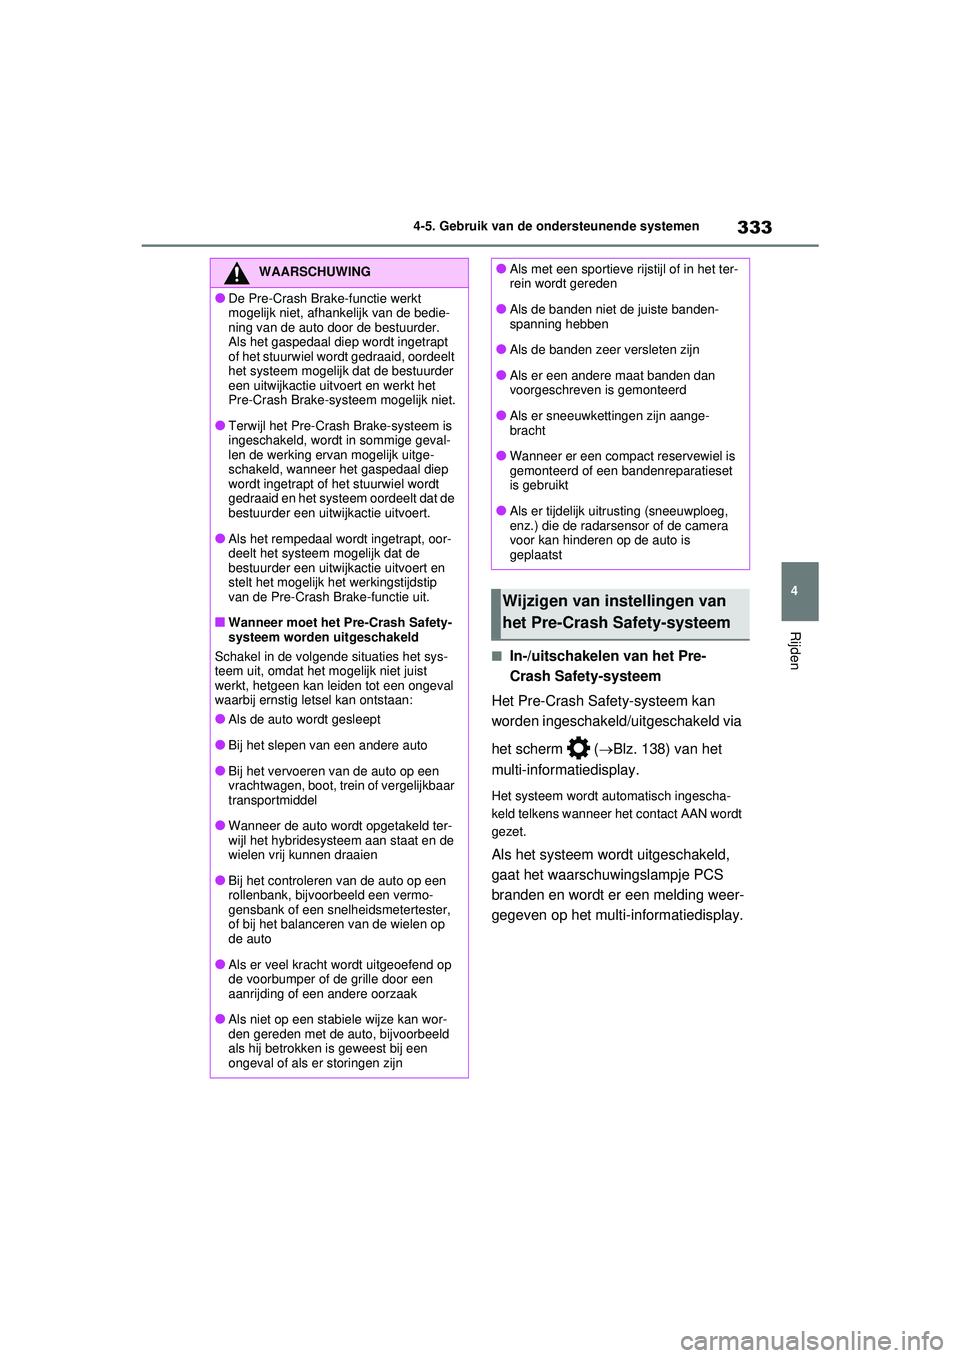 TOYOTA RAV4 HYBRID 2021  Instructieboekje (in Dutch) 333
4
4-5. Gebruik van de ondersteunende systemen
Rijden
■In-/uitschakelen van het Pre-
Crash Safety-systeem
Het Pre-Crash Safety-systeem kan 
worden ingeschakeld/uitgeschakeld via 
het scherm   ( �